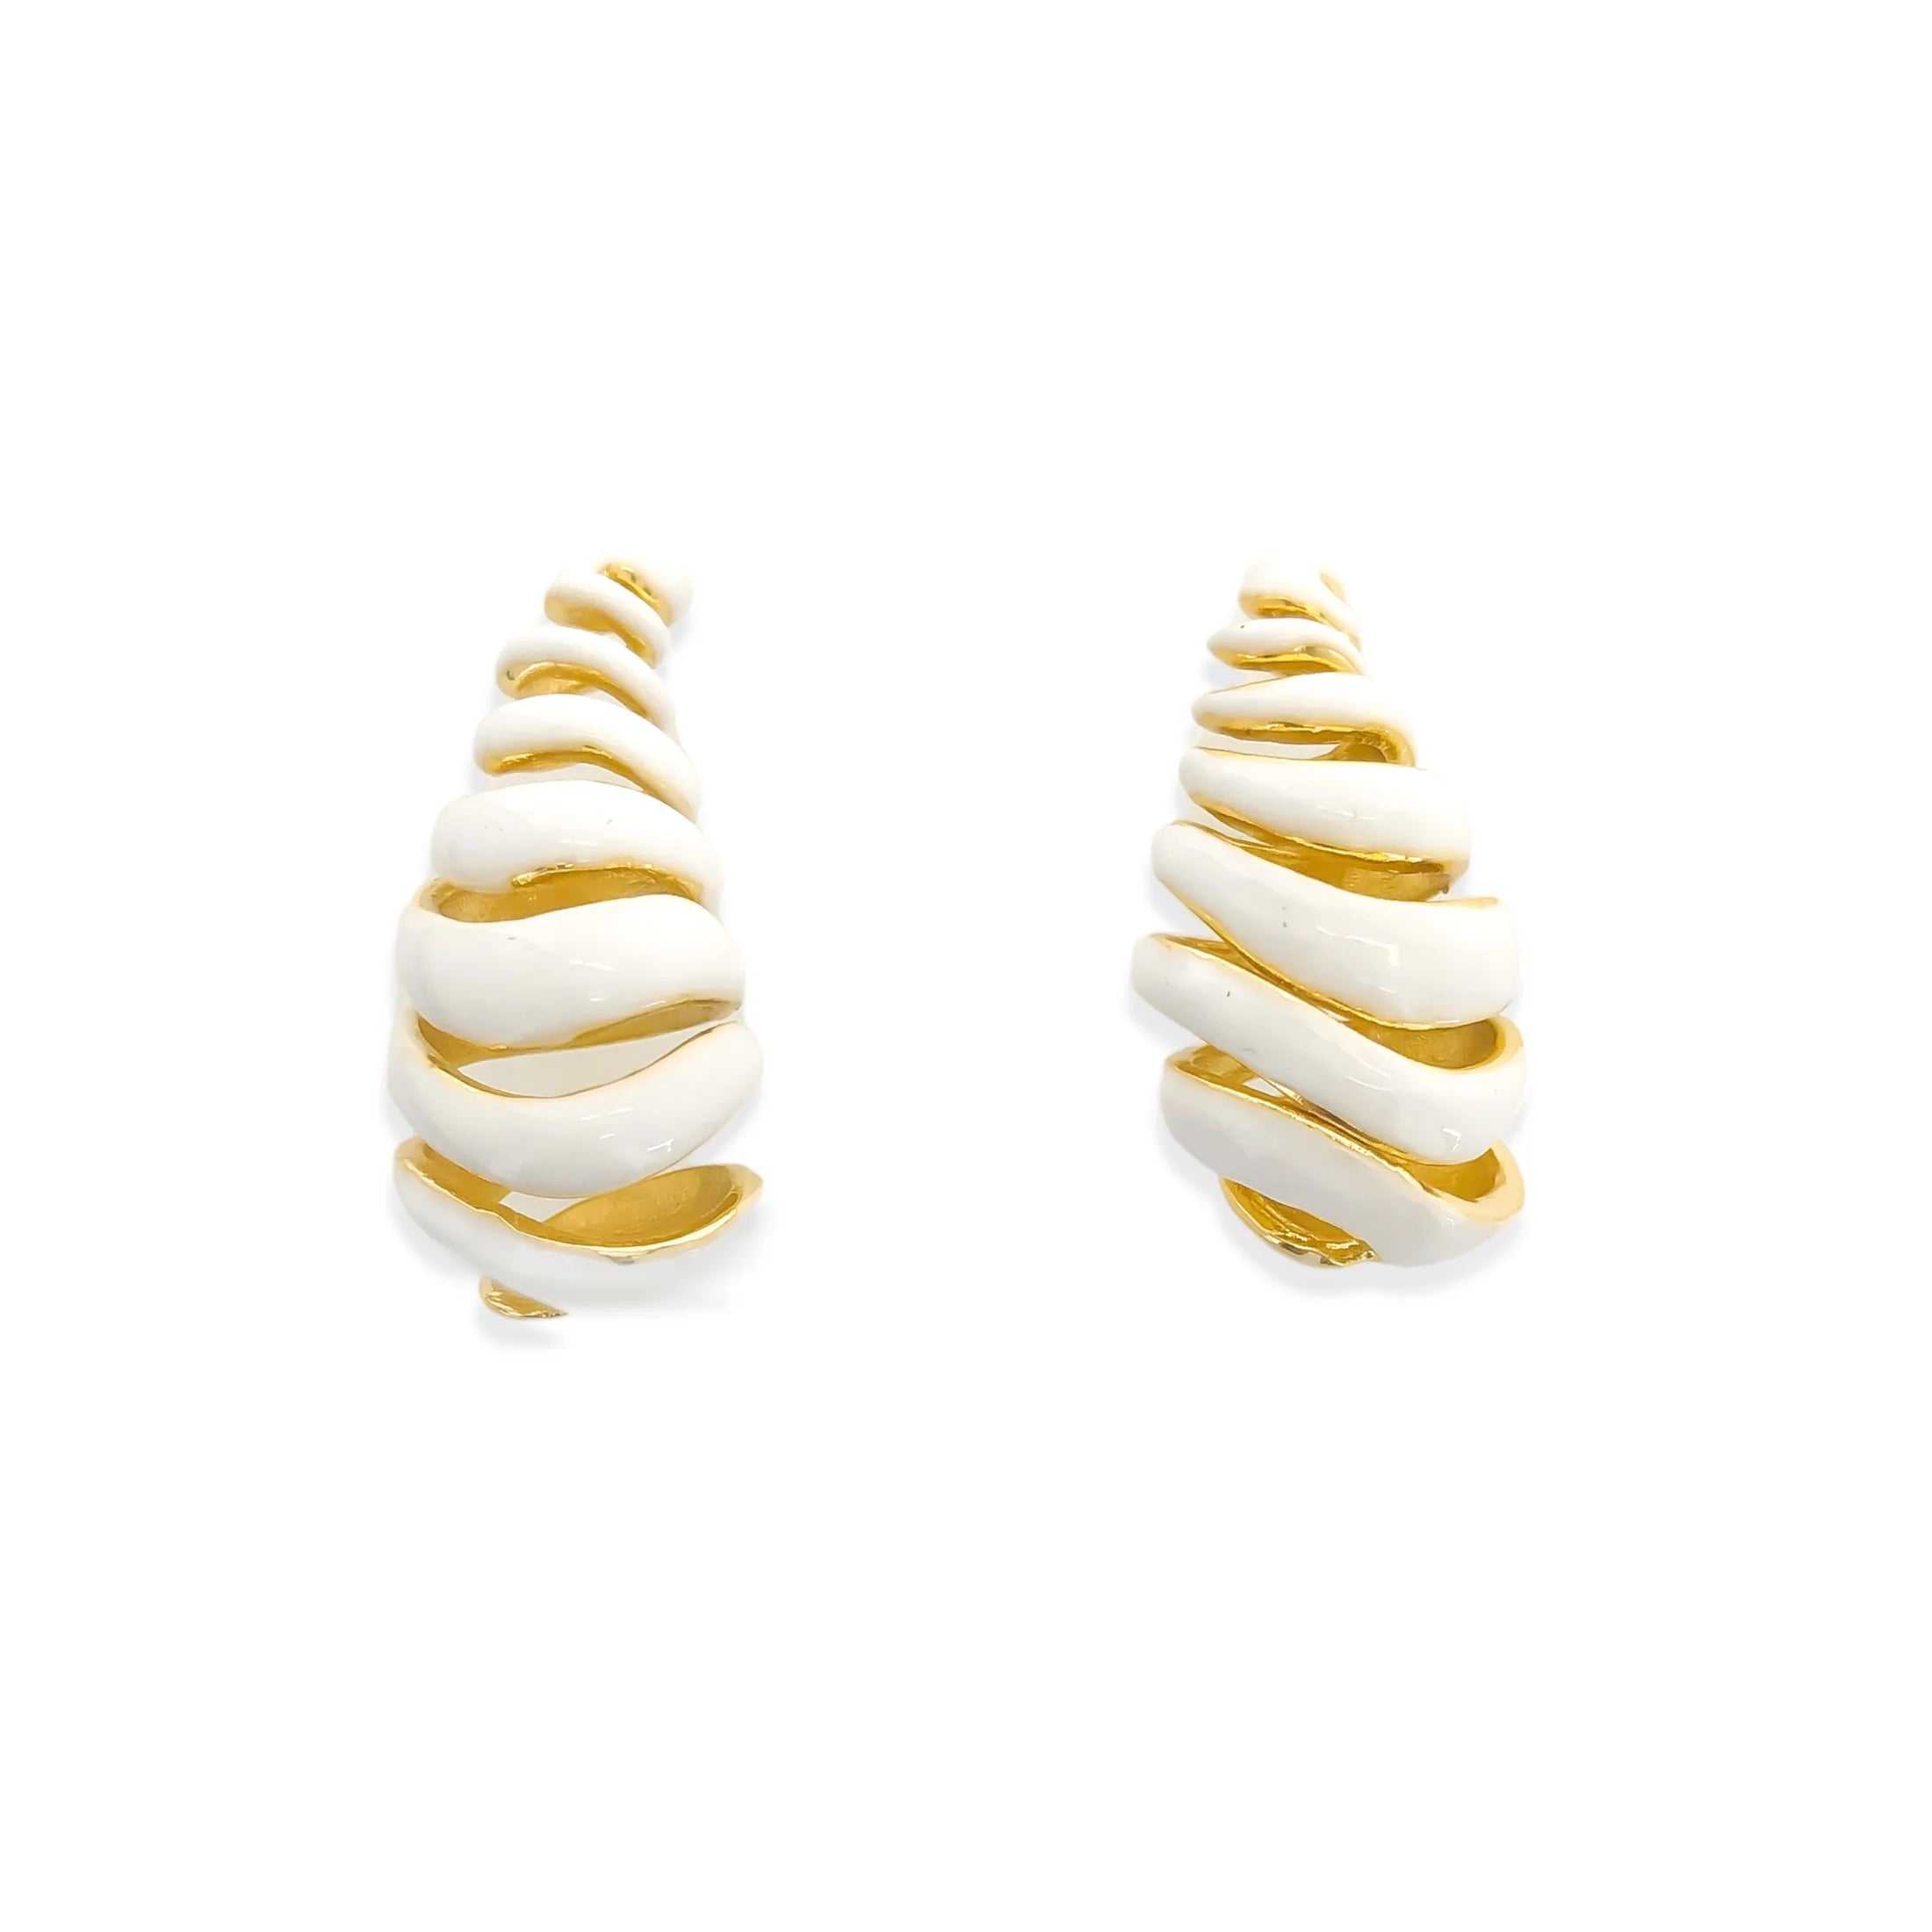 Enamel Swirl Earrings in White and Gold